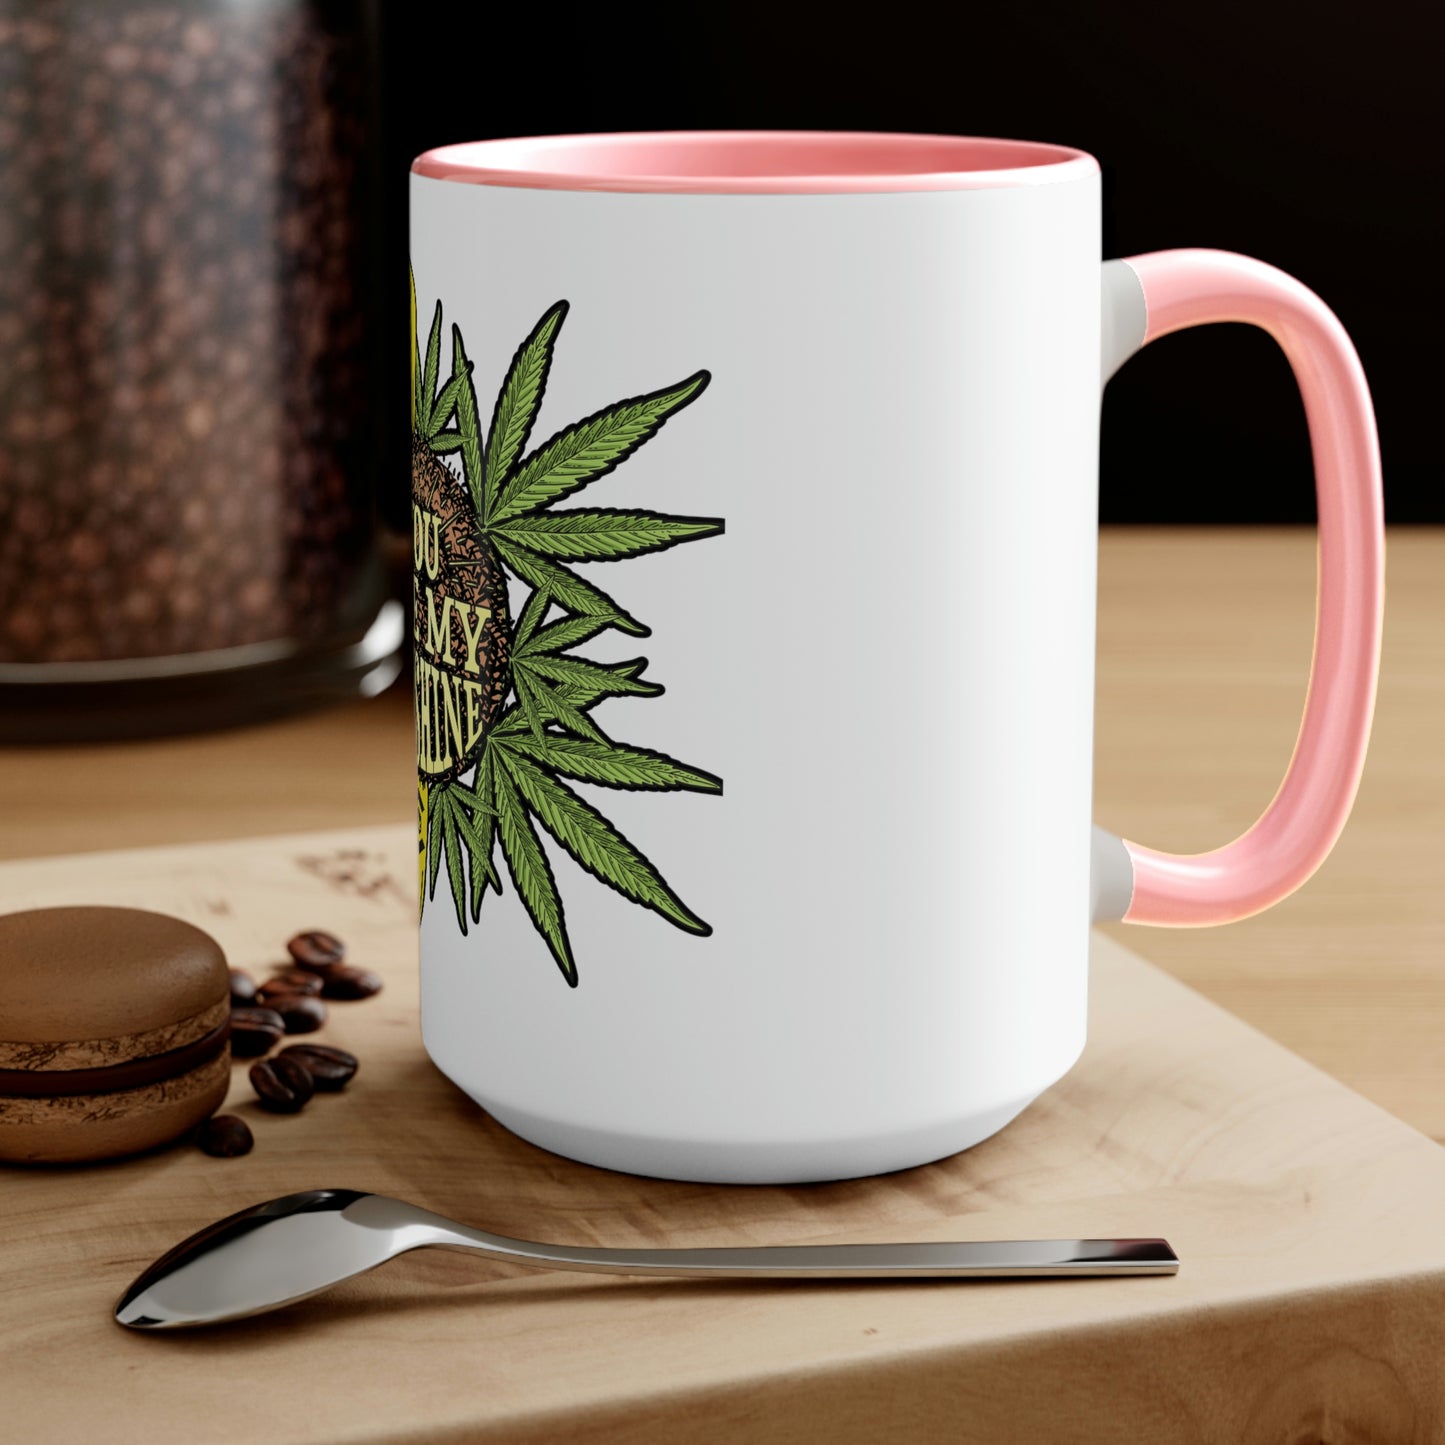 a You Are My Sunshine coffee mug with a marijuana leaf on it.